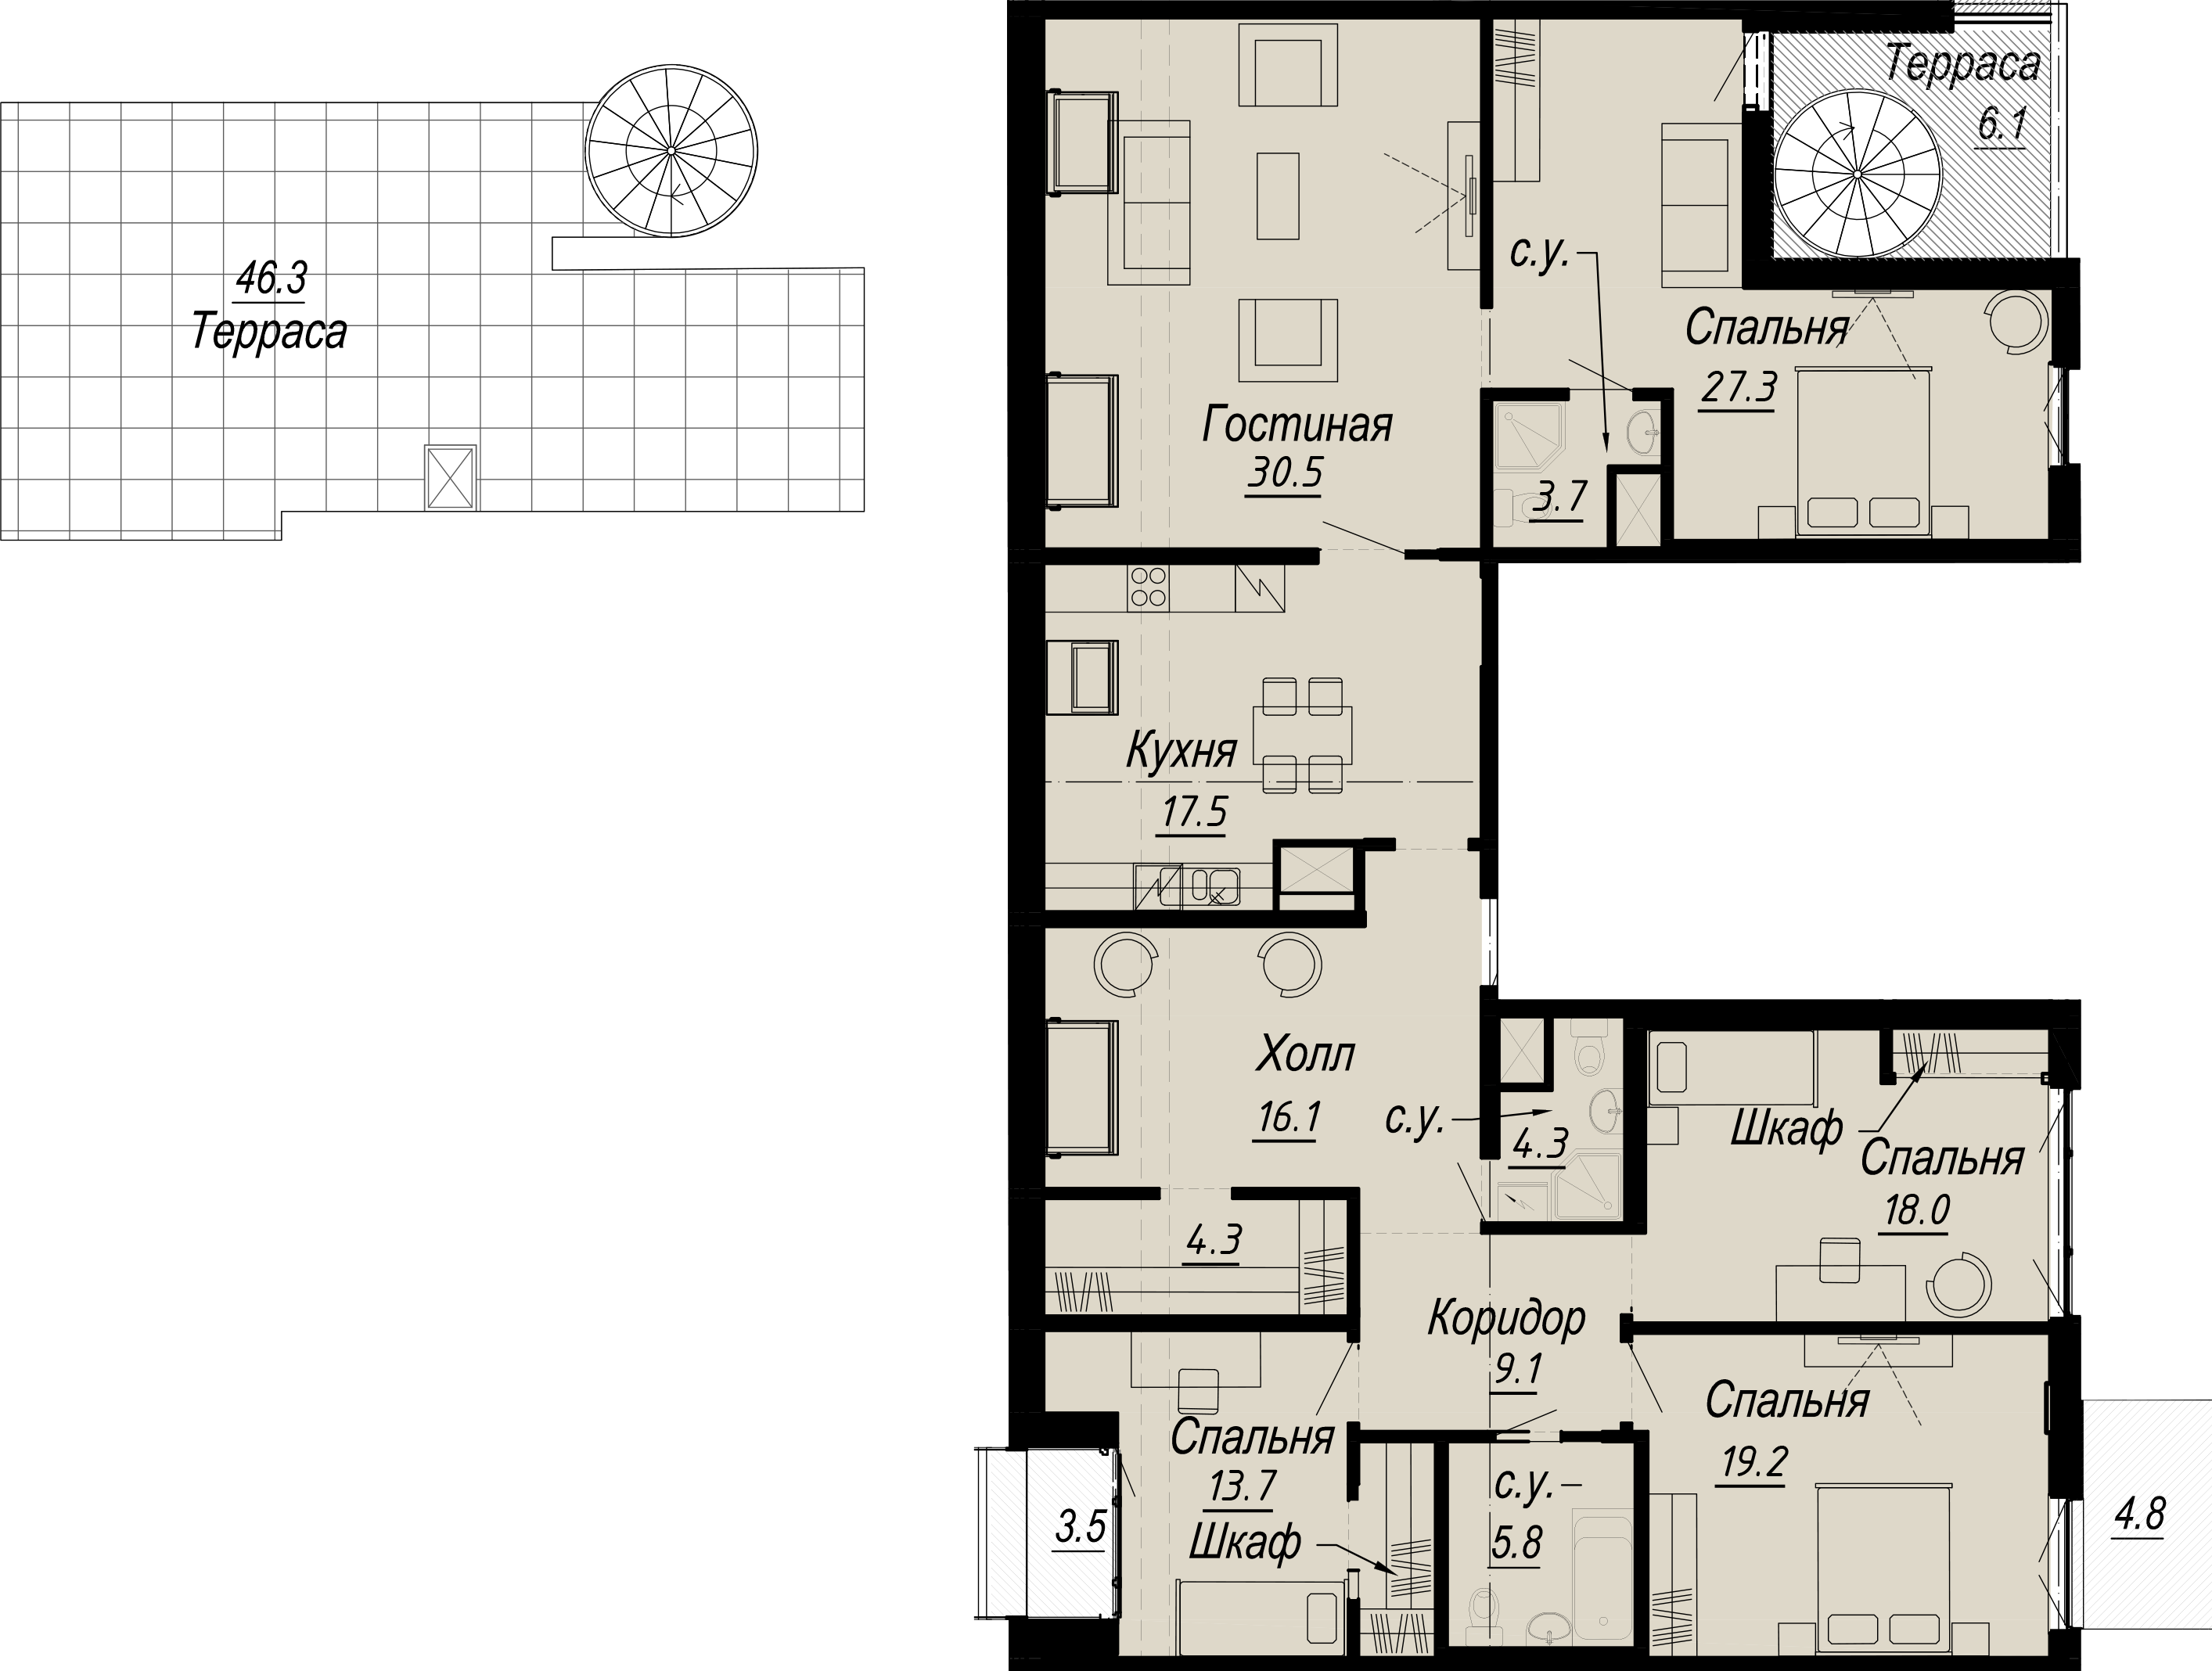 5-комнатная квартира  №10-8 в Meltzer Hall: 189 м², этаж 8 - купить в Санкт-Петербурге